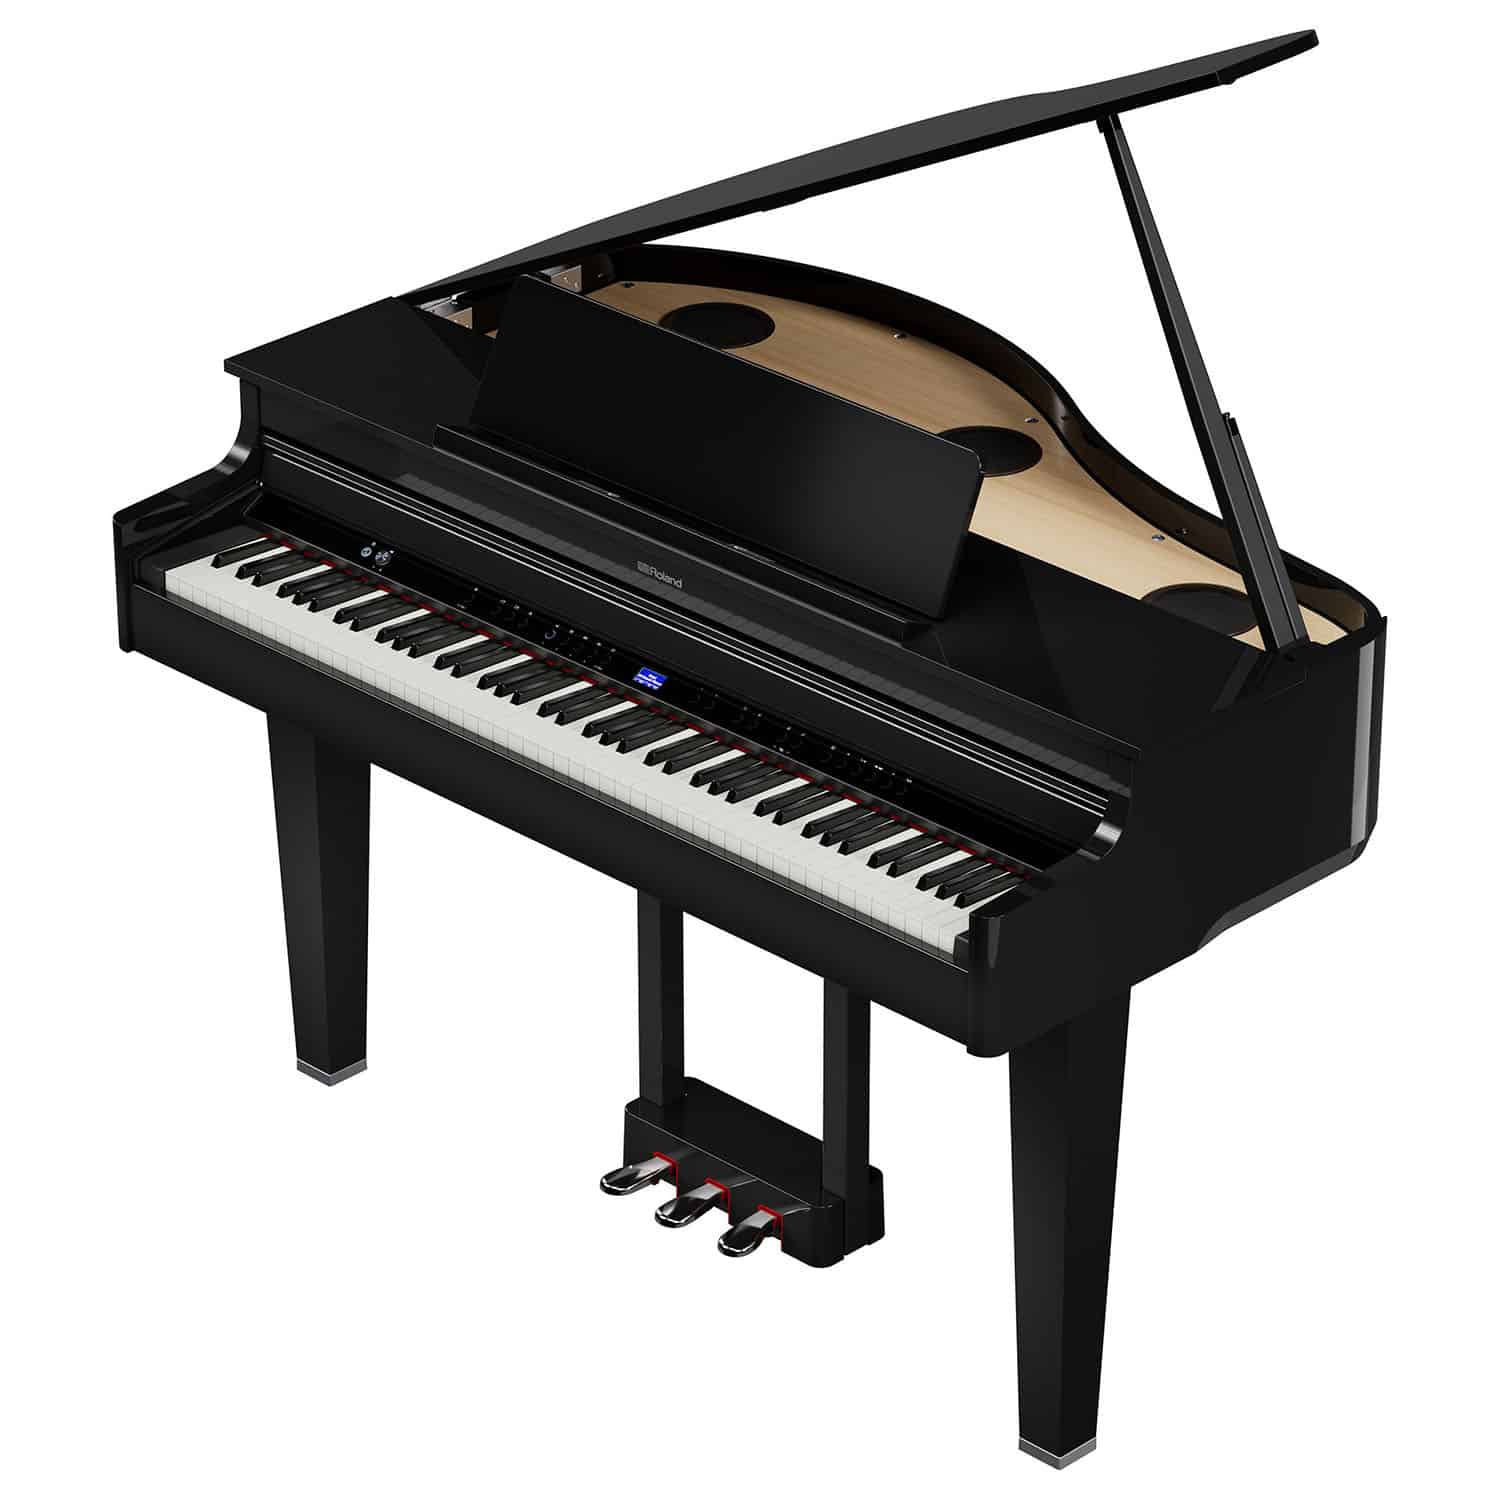 Musical Innovation: A Grander Grand Piano : NPR